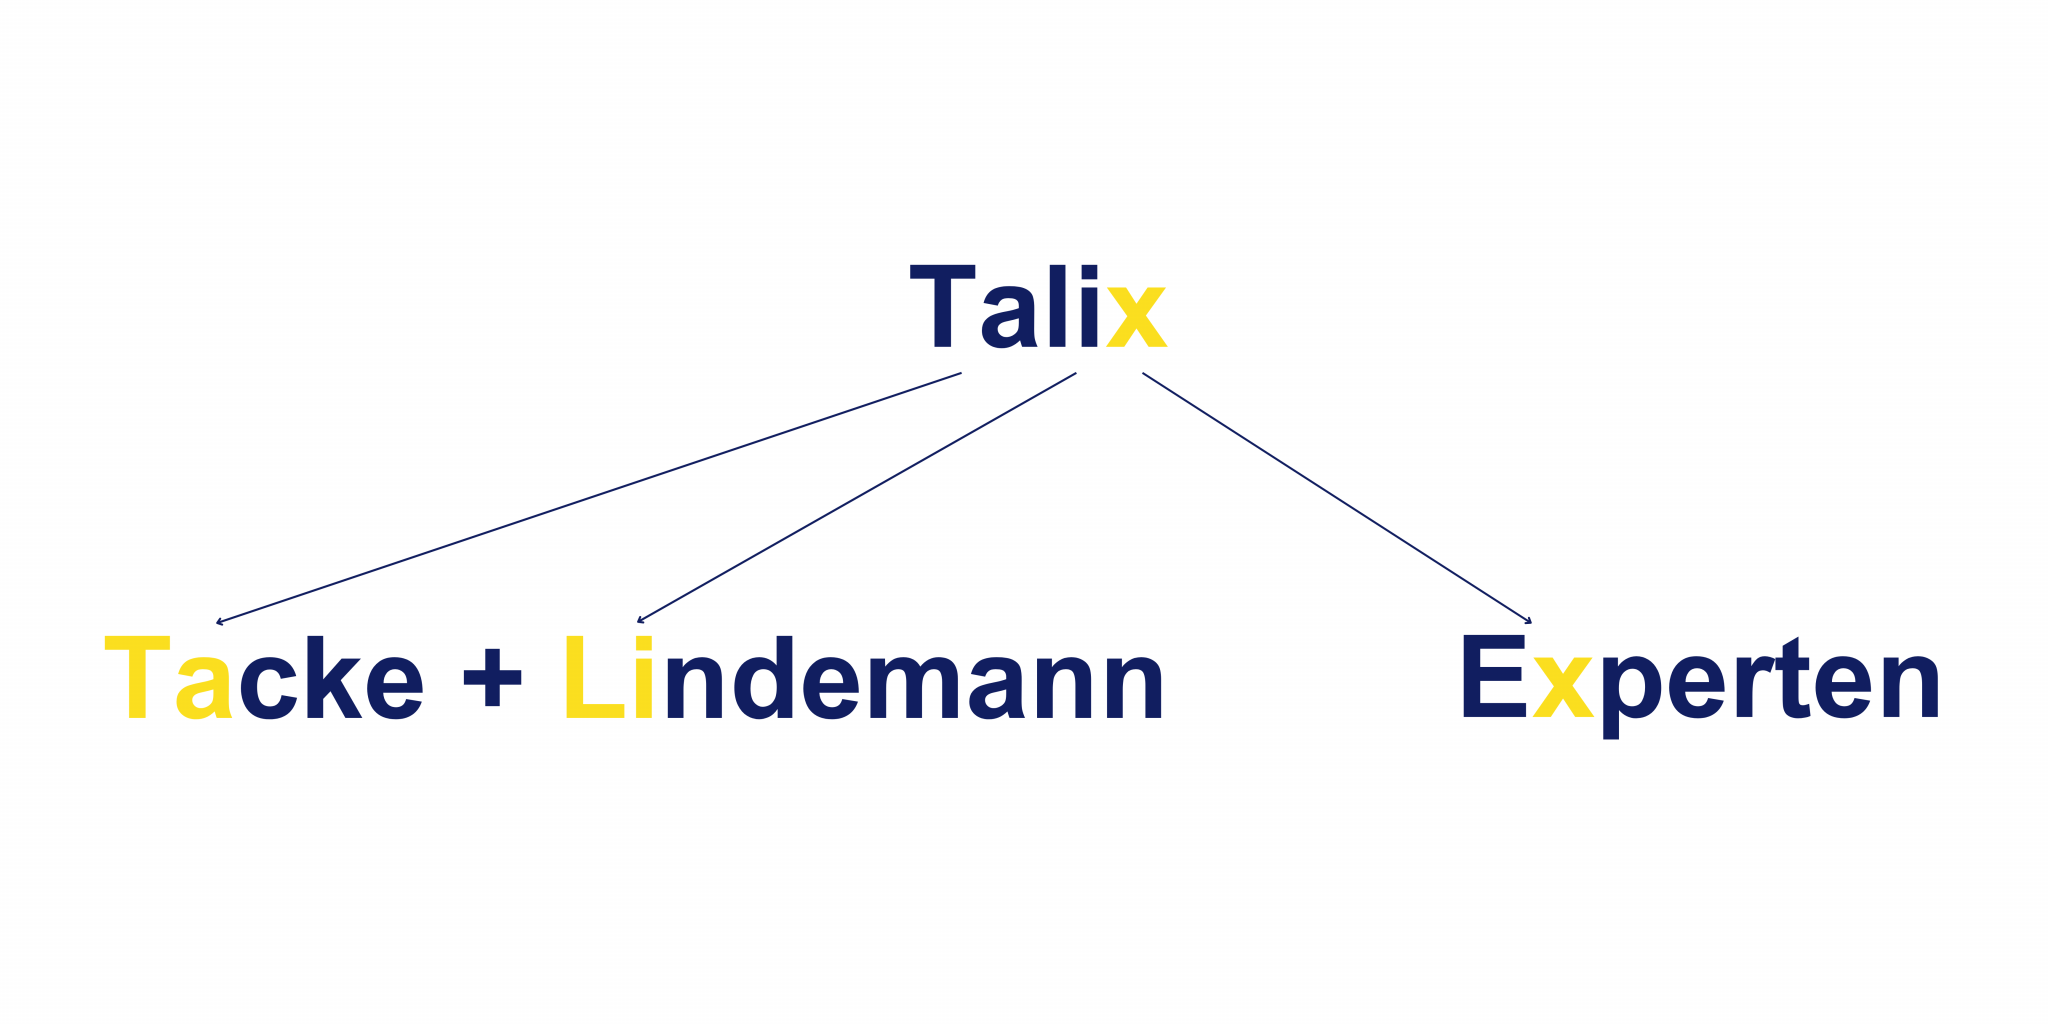 Grafik die erklärt wie sich der Name der Eigenmarke Talix zusammensetzt.